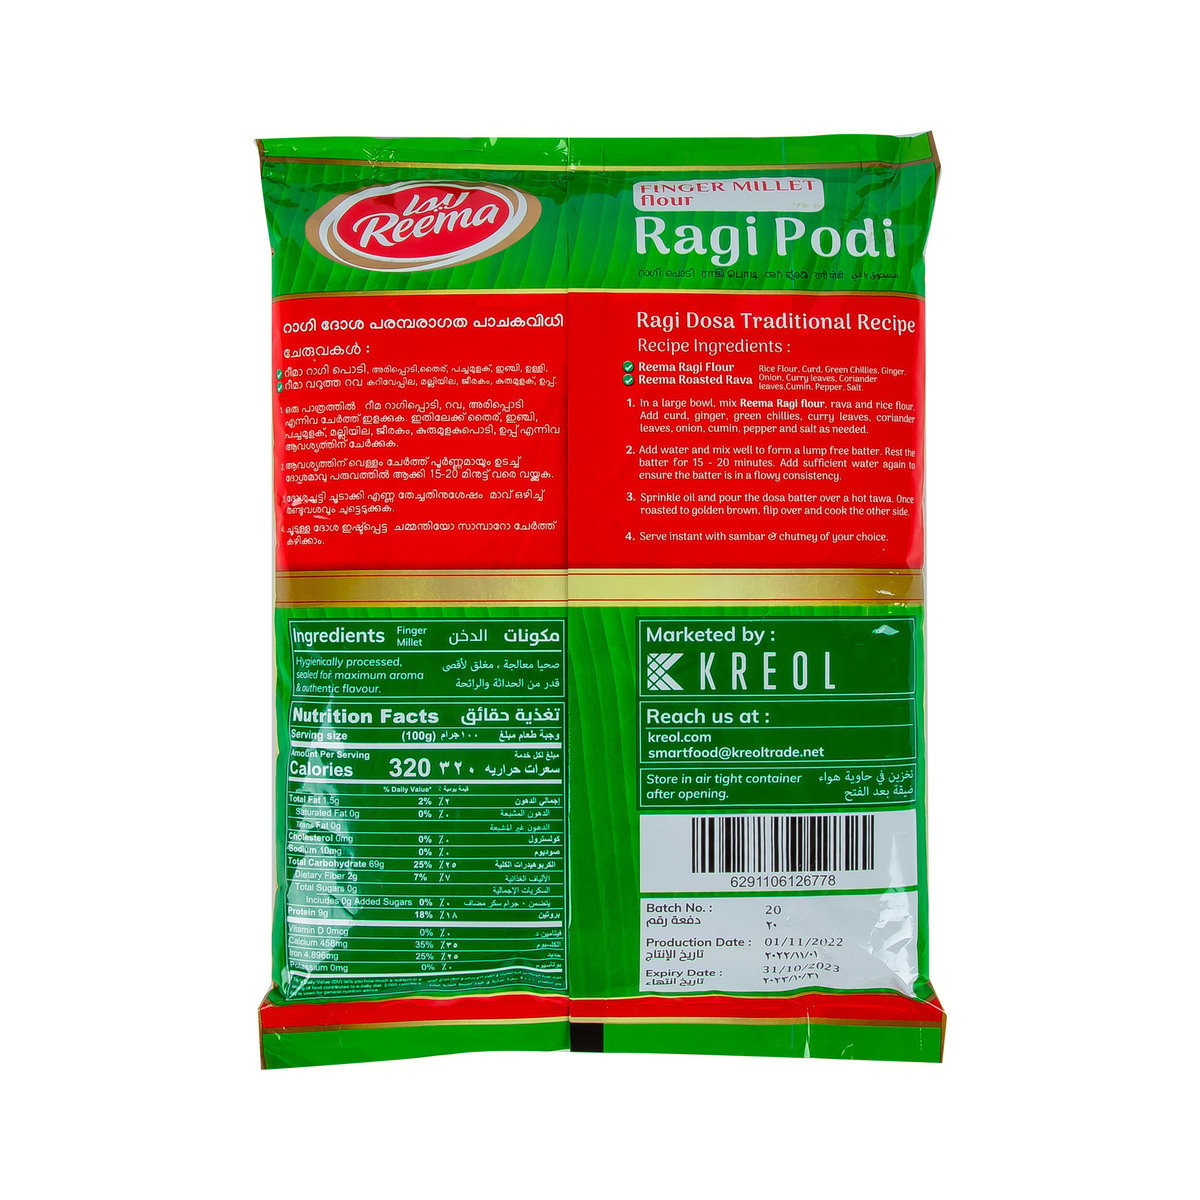 Reema Finger Millet Flour Ragi Podi 1 kg